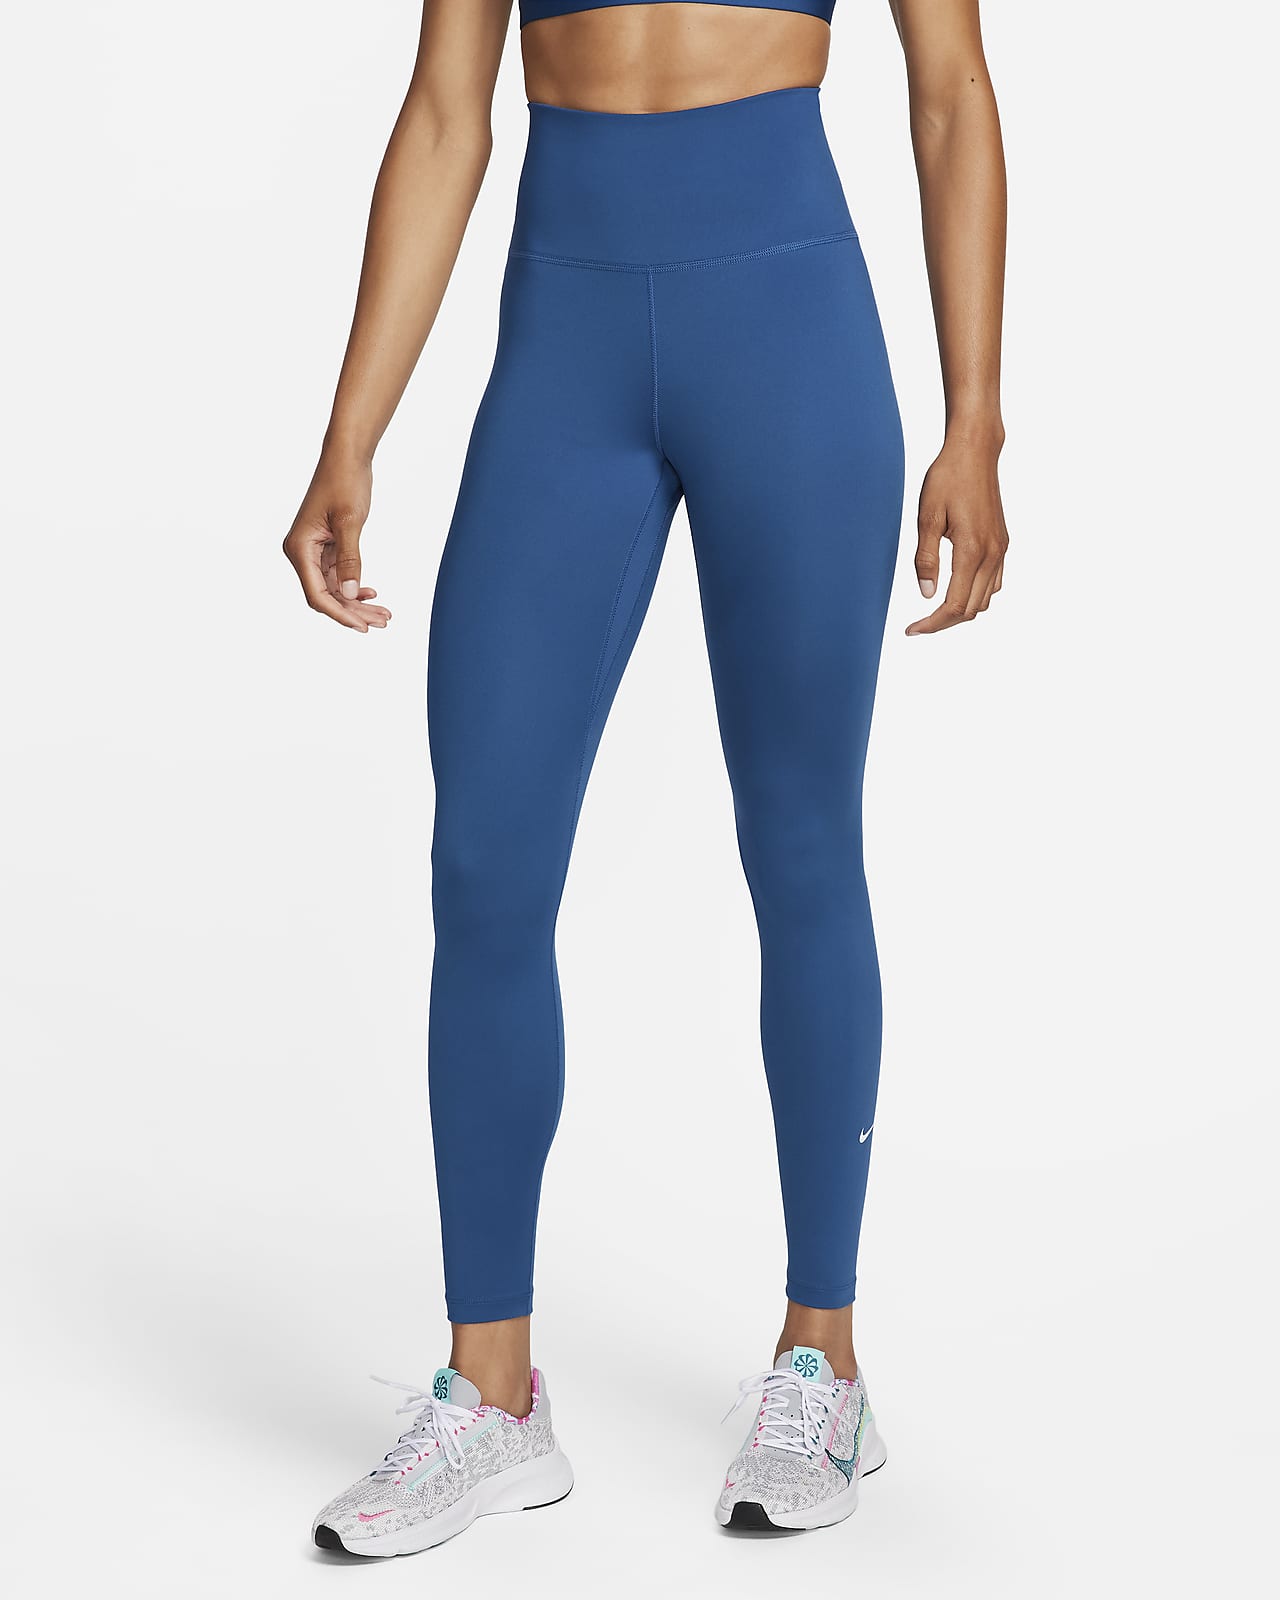 Legging femme Nike One Dri-Fit HR Leopard - Pantalons / leggings - Femme -  Entretien Physique